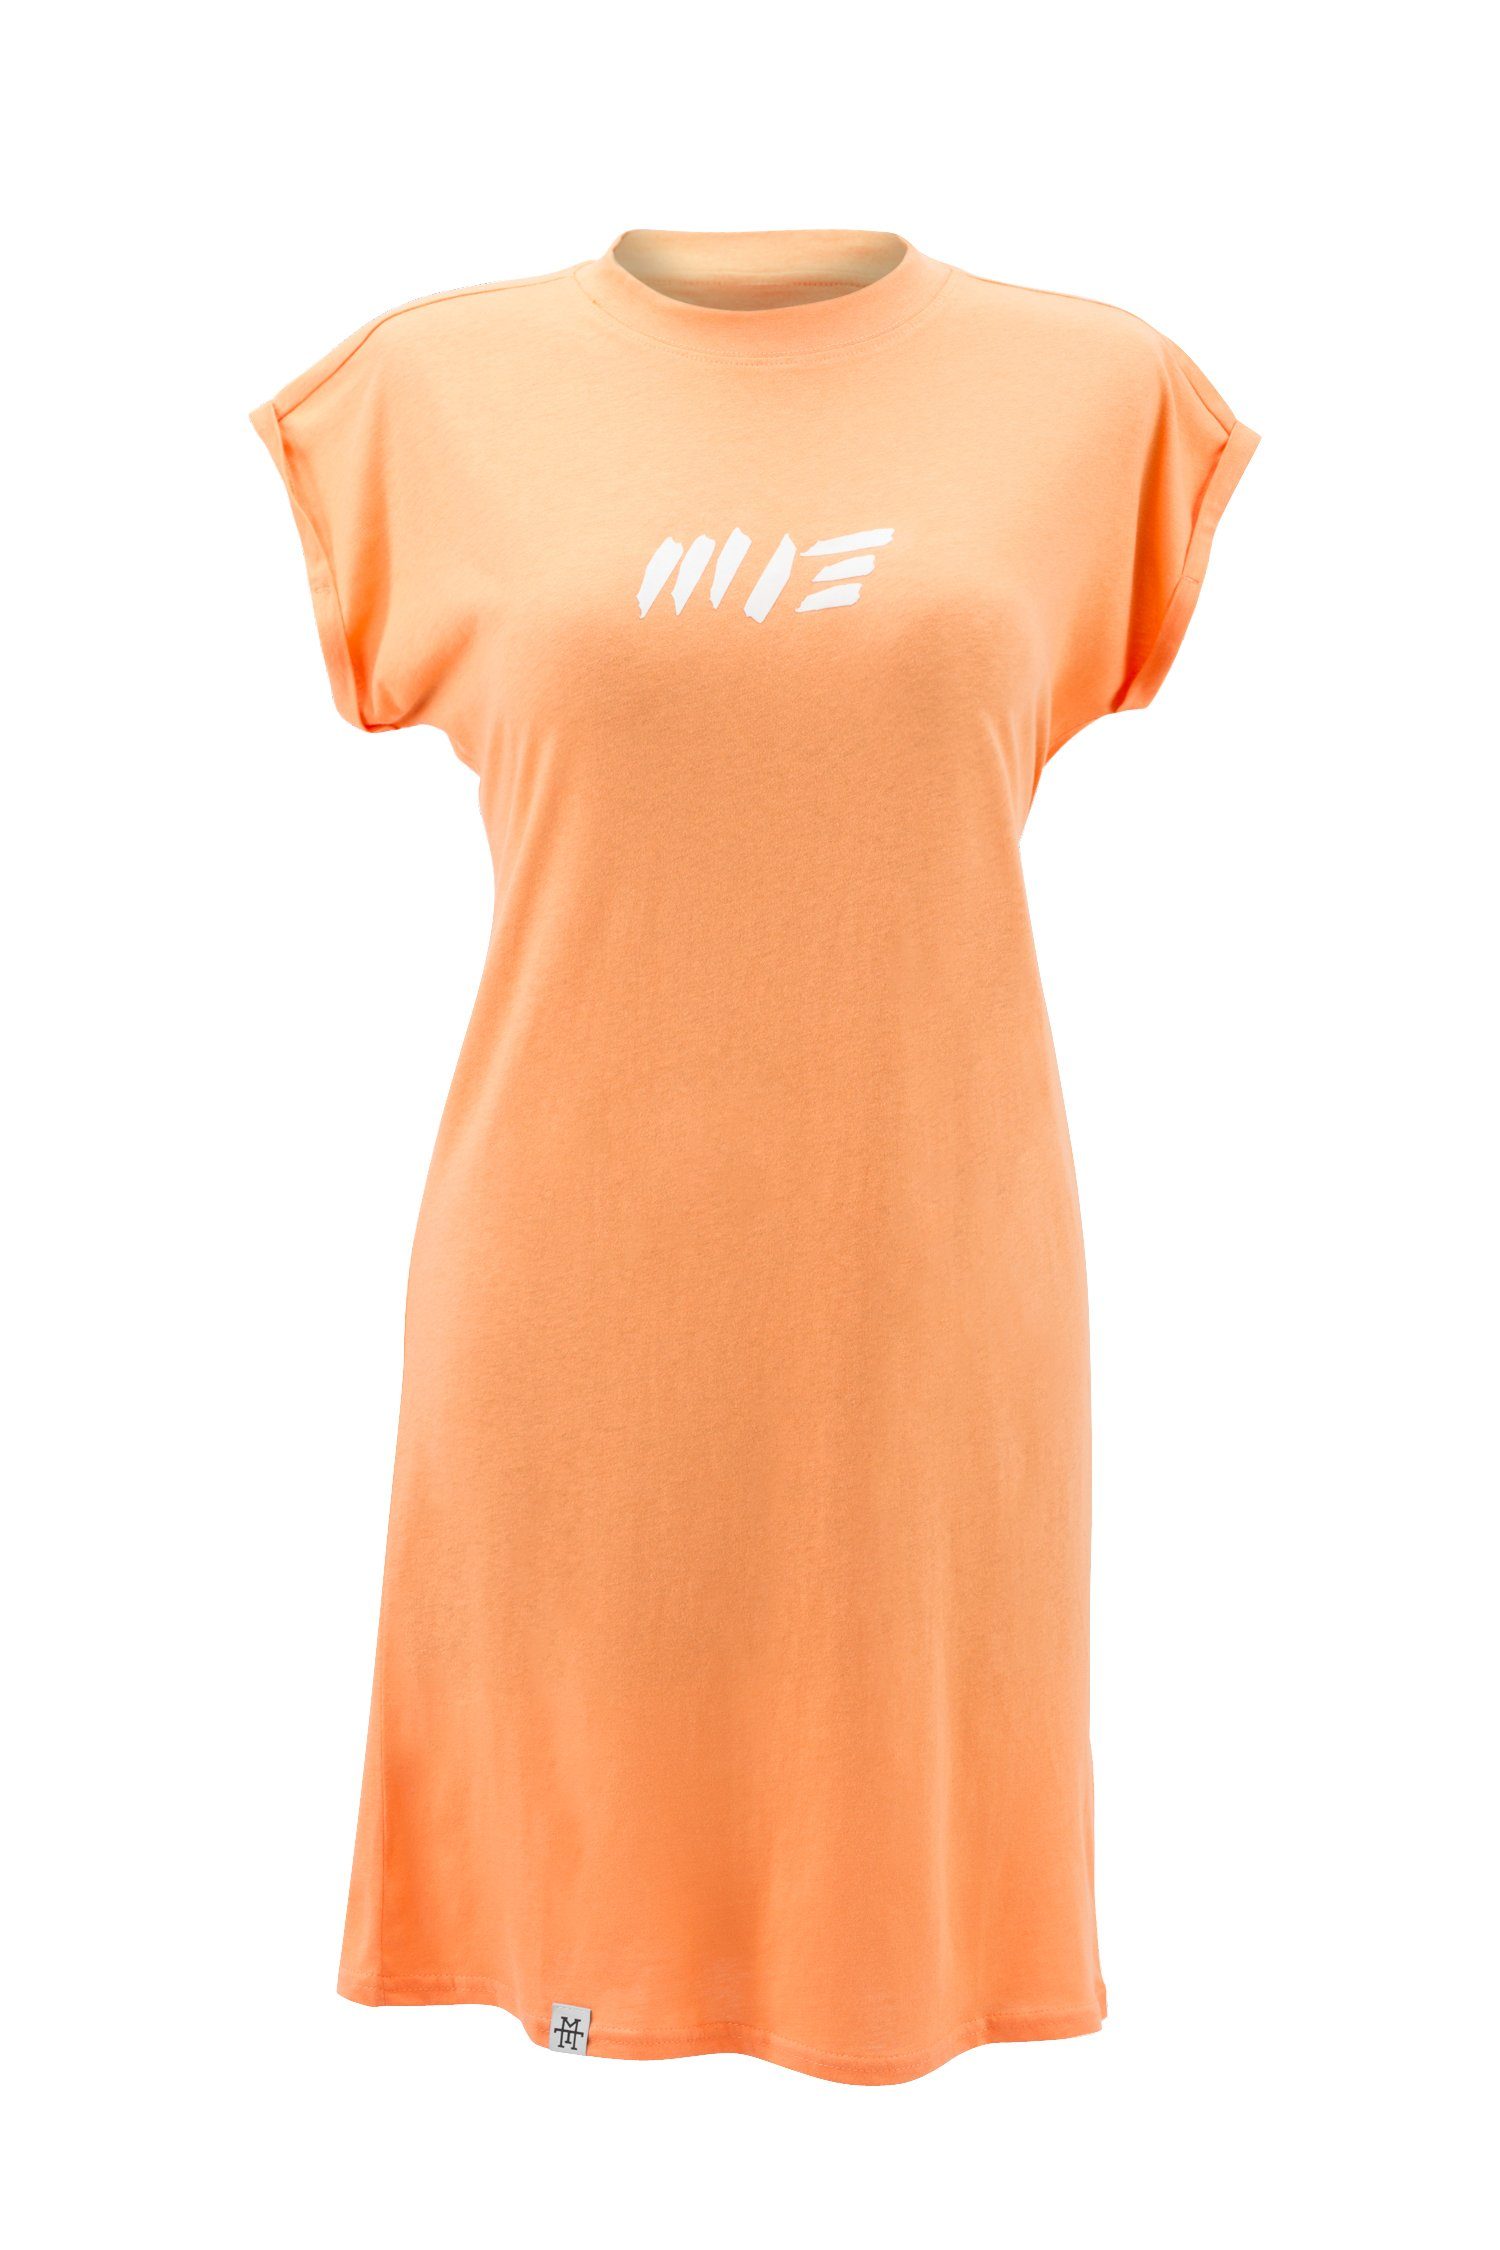 Manufaktur13 Shirtkleid Summer Tee Dress - Sommerkleid, T-Shirt Kleid, Jerseykleid 100% Baumwolle Peach